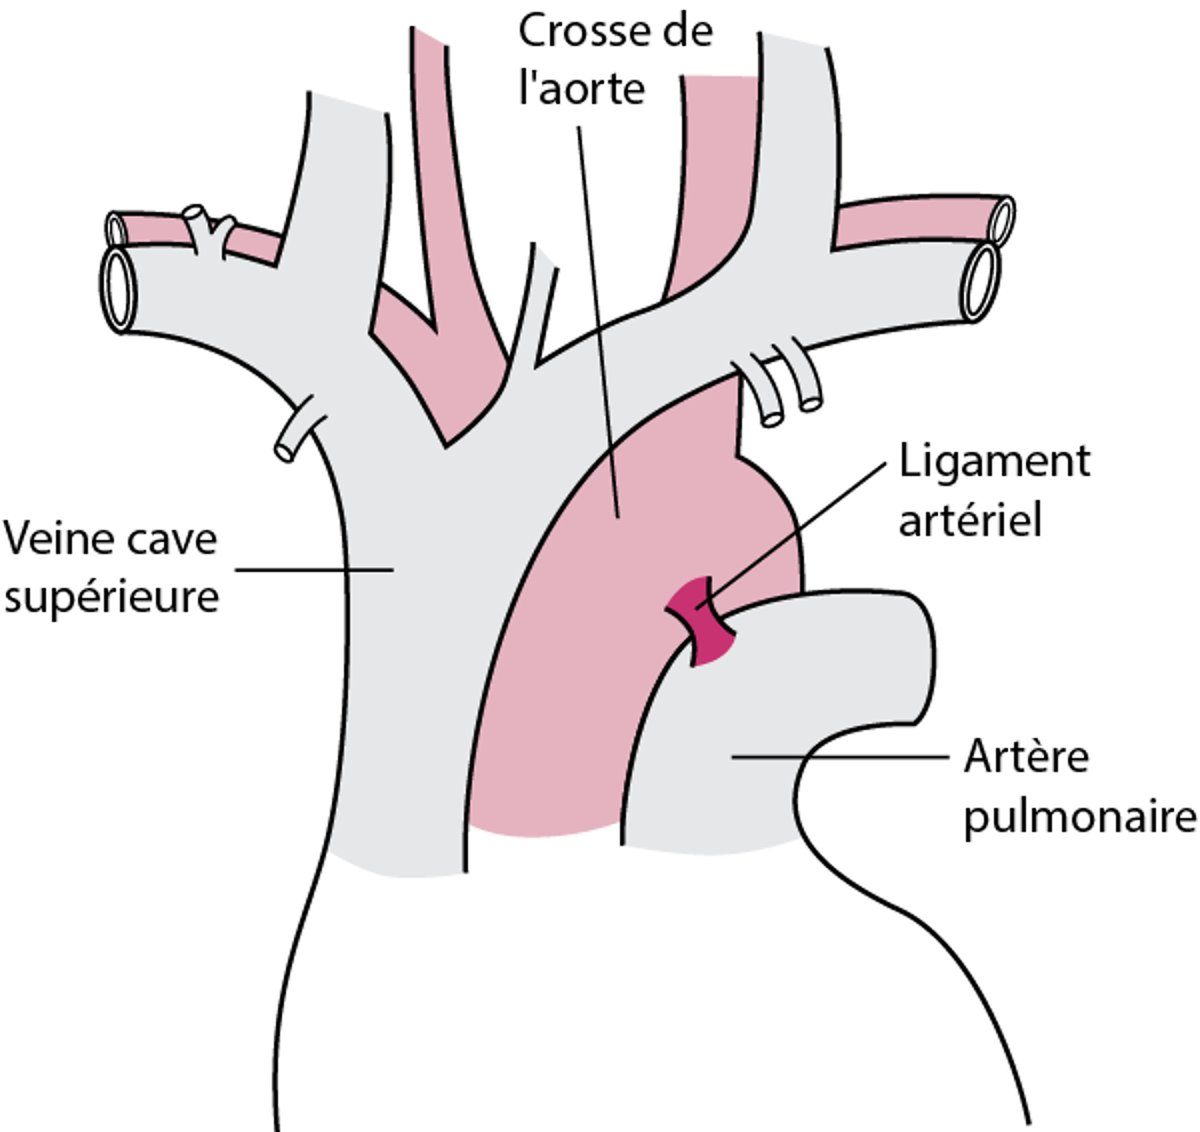 La plupart des ruptures partielles de l'aorte se produisent près du ligament artériel